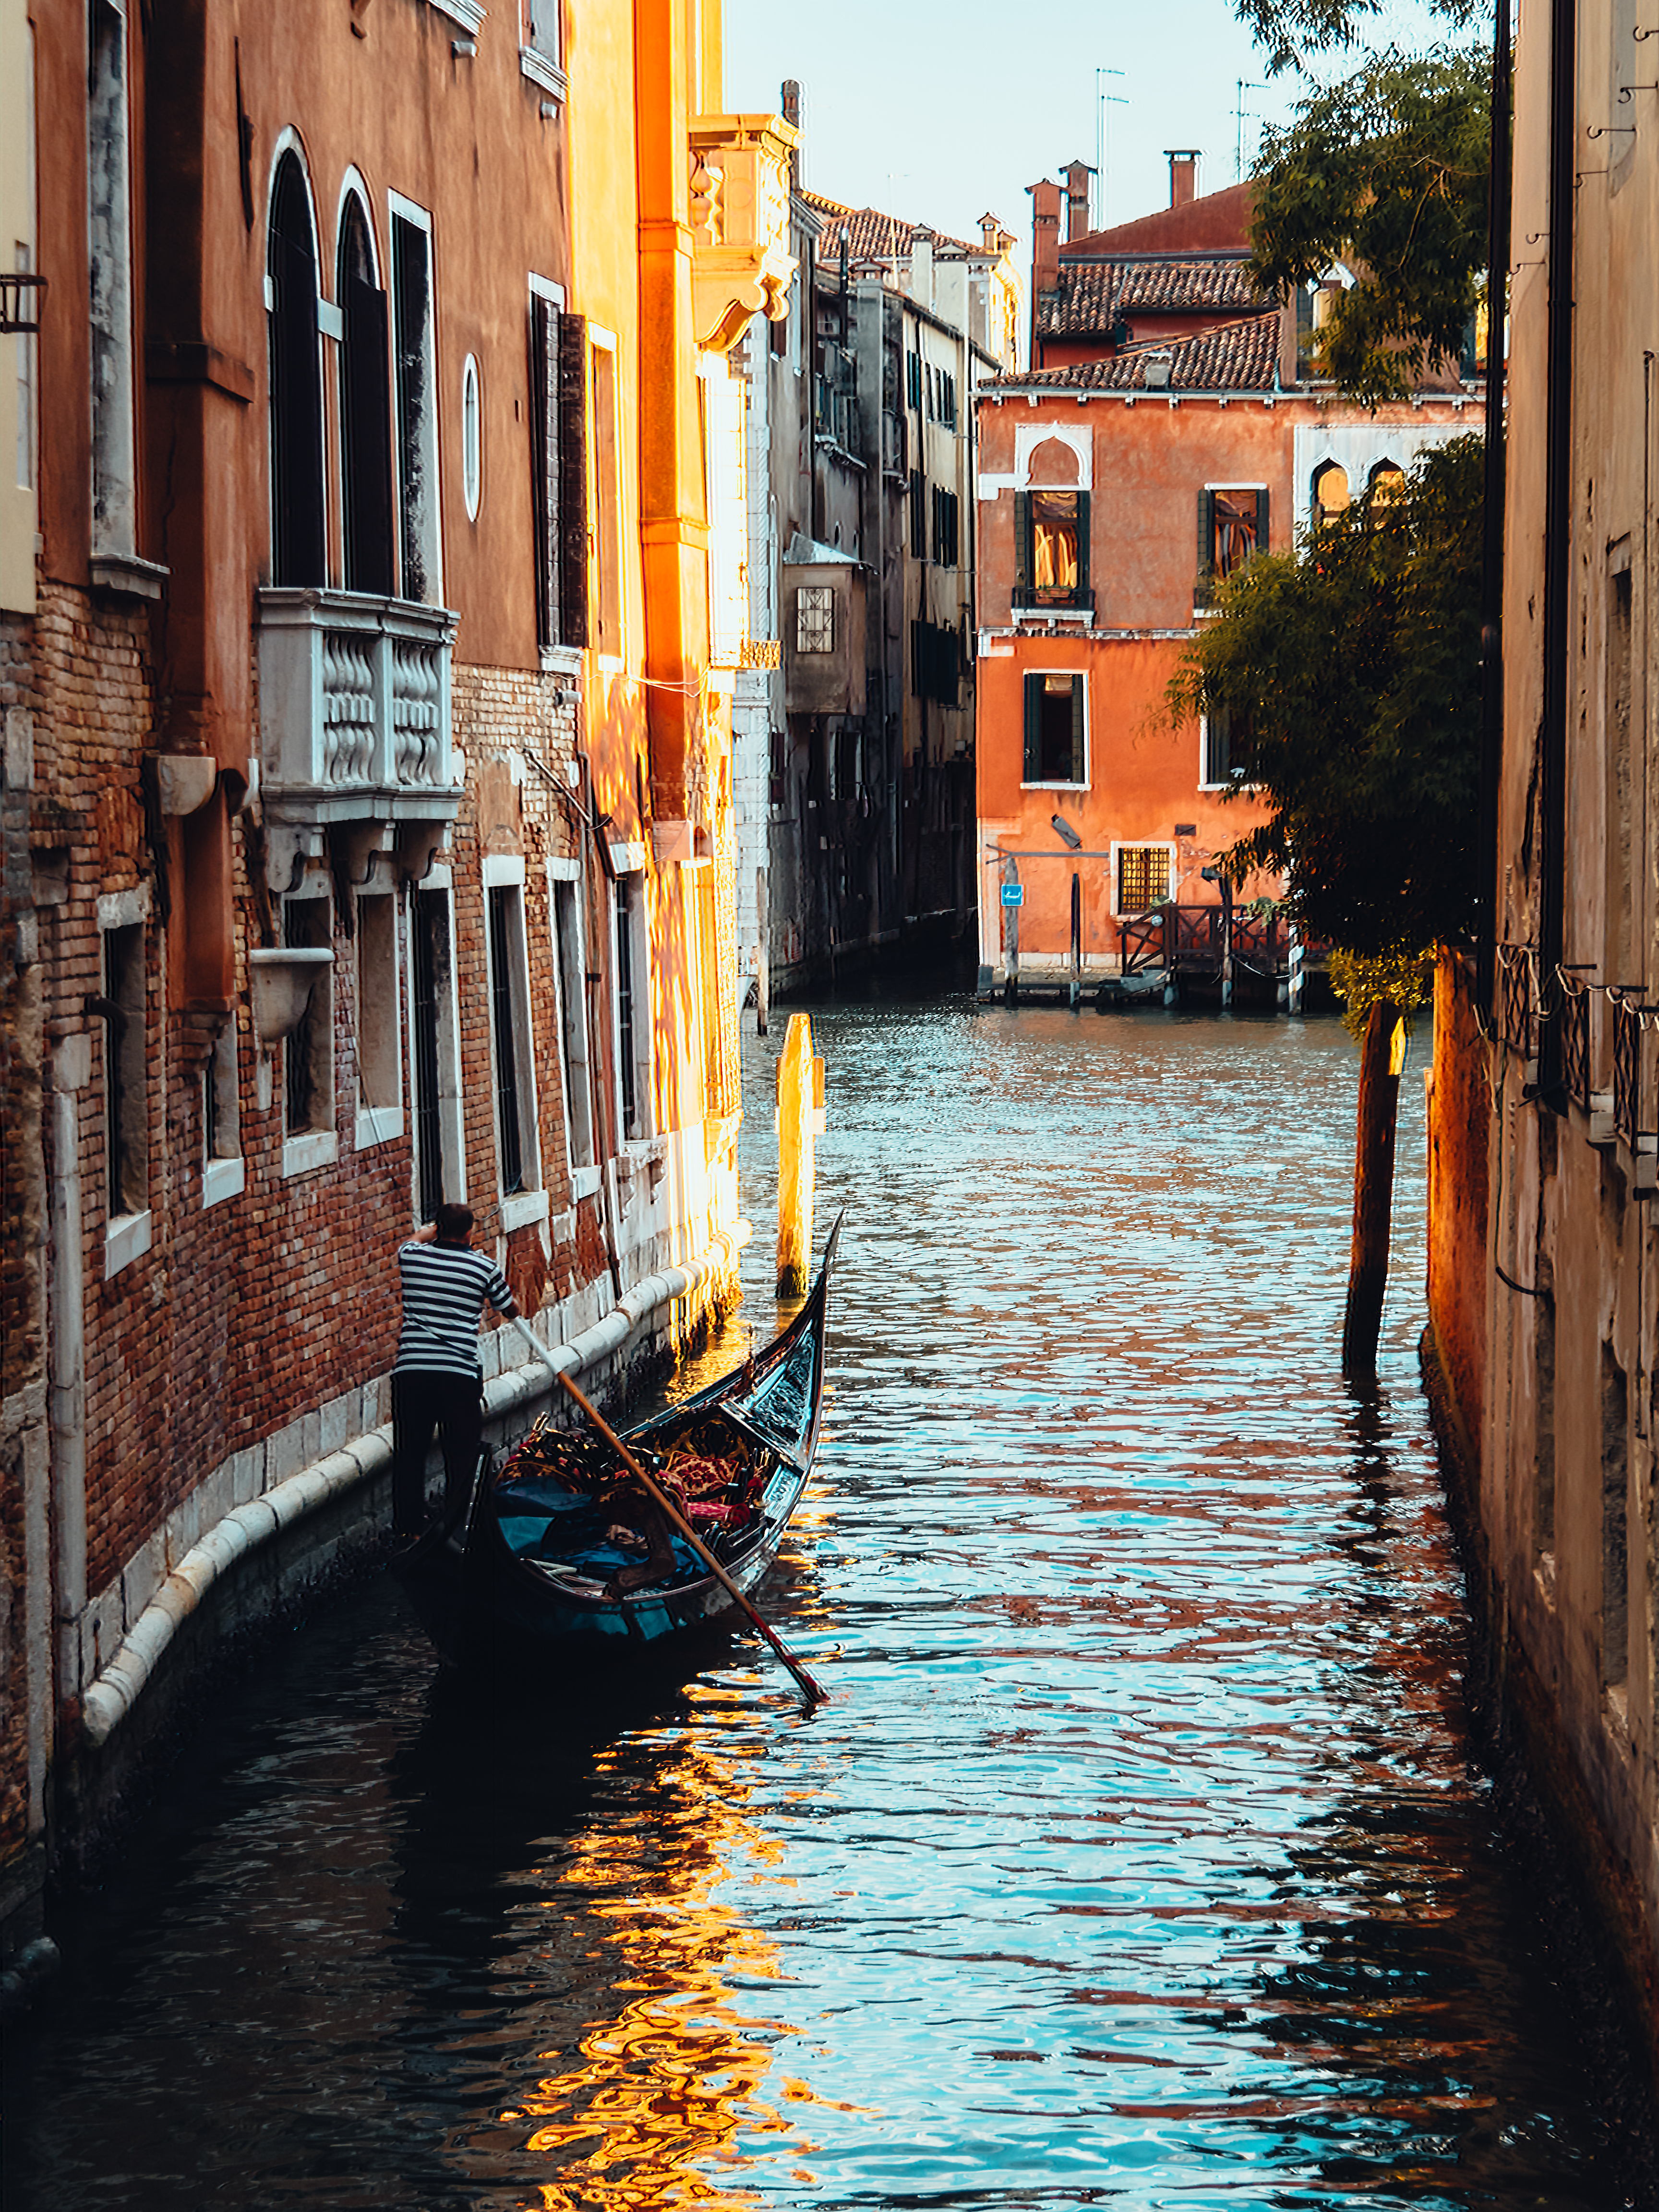 水の都ヴェネツィア観光1日目 幻想的な夕焼けと夜景 インドア人事のこだわり